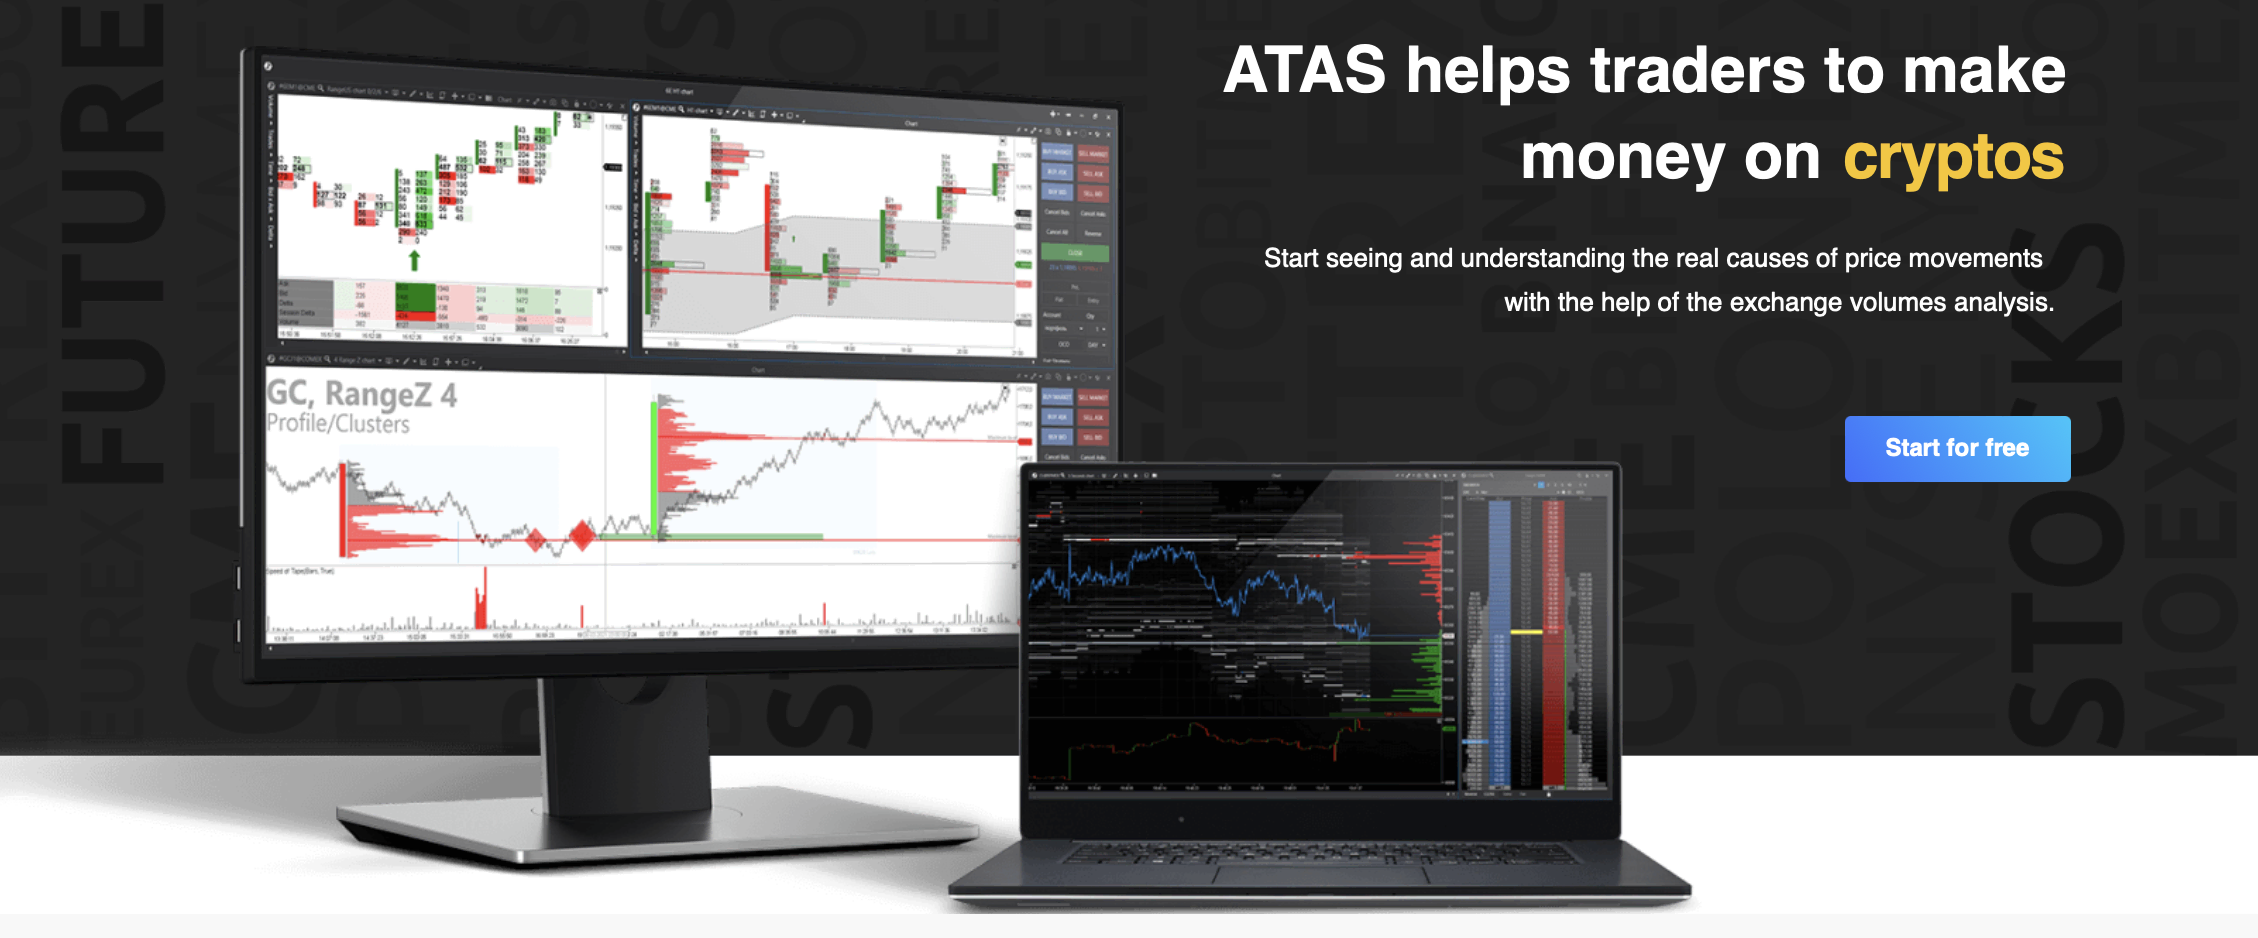 ATAS 거래 플랫폼의 공식 웹사이트